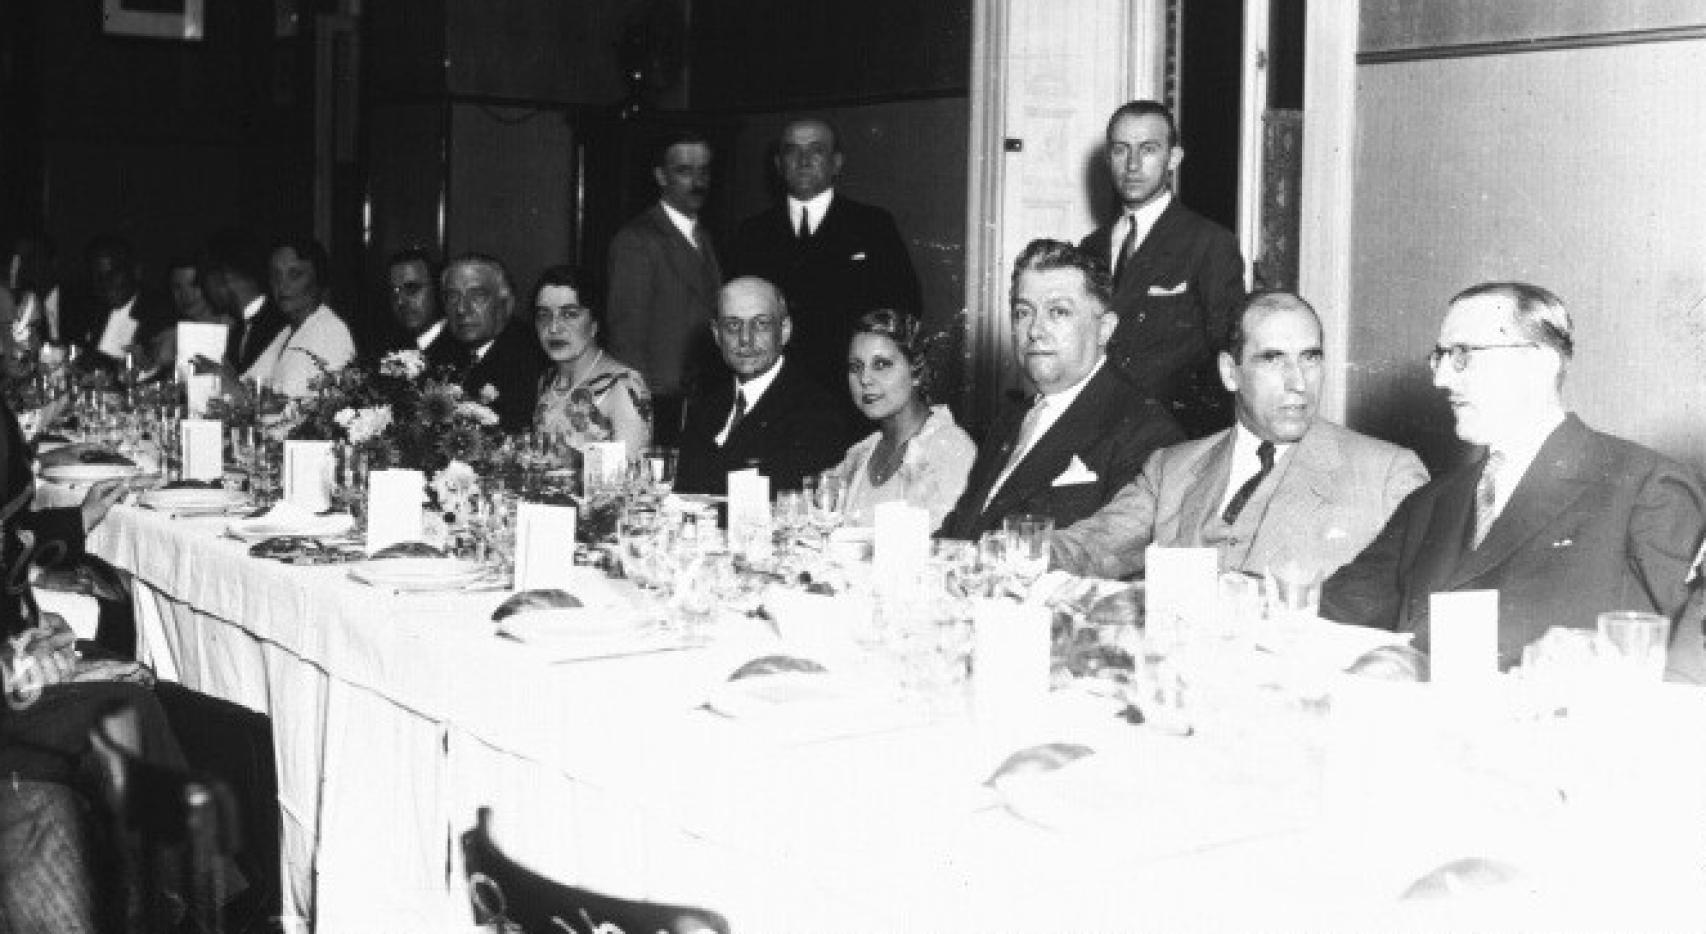 Jean Herbette, embajador de Francia en España, durante un banquete. Es la quinta persona sentada contando desde la derecha.